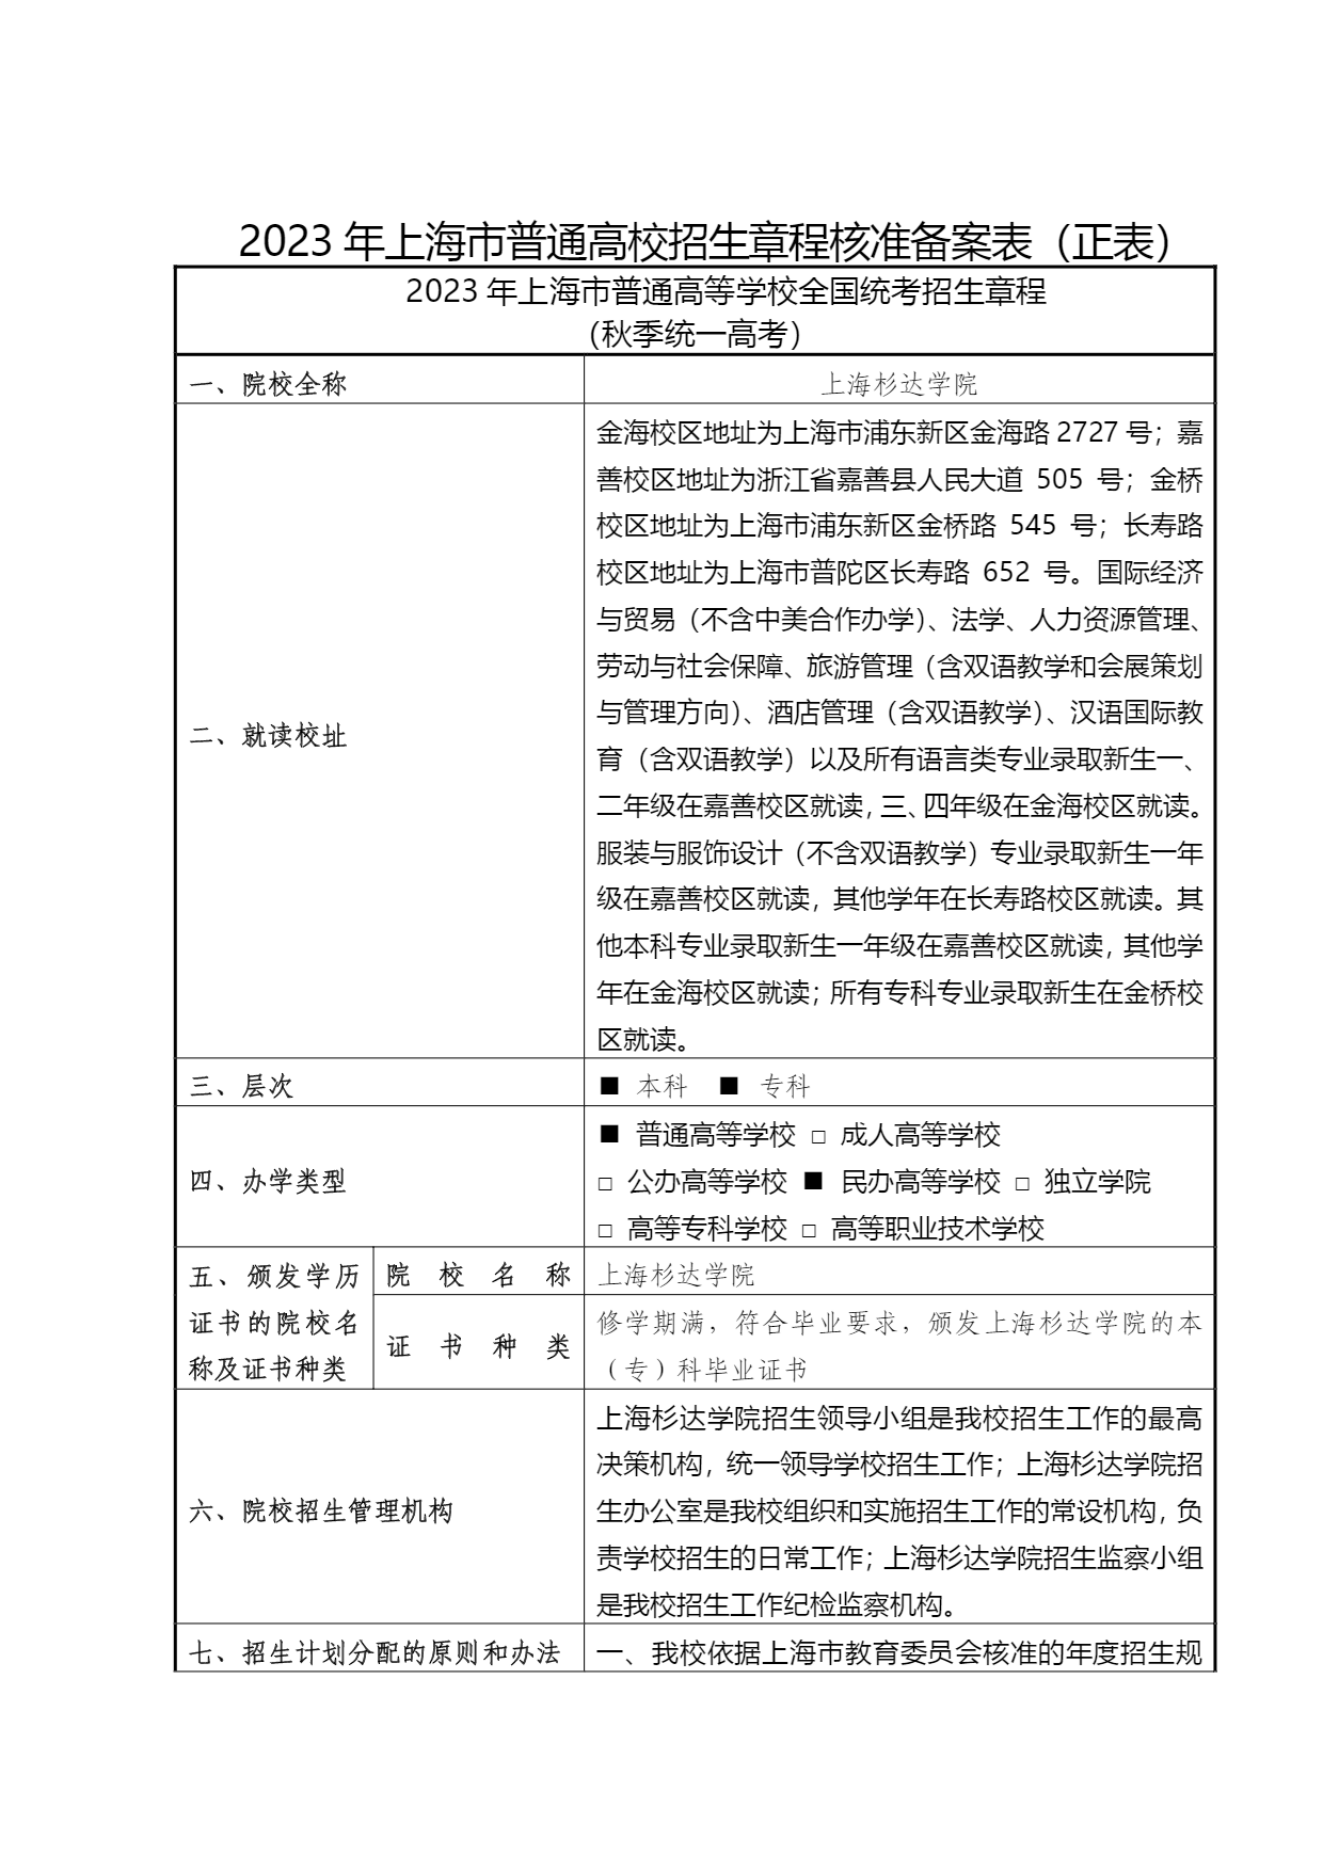 上海杉达学院－2023年秋季招生章程